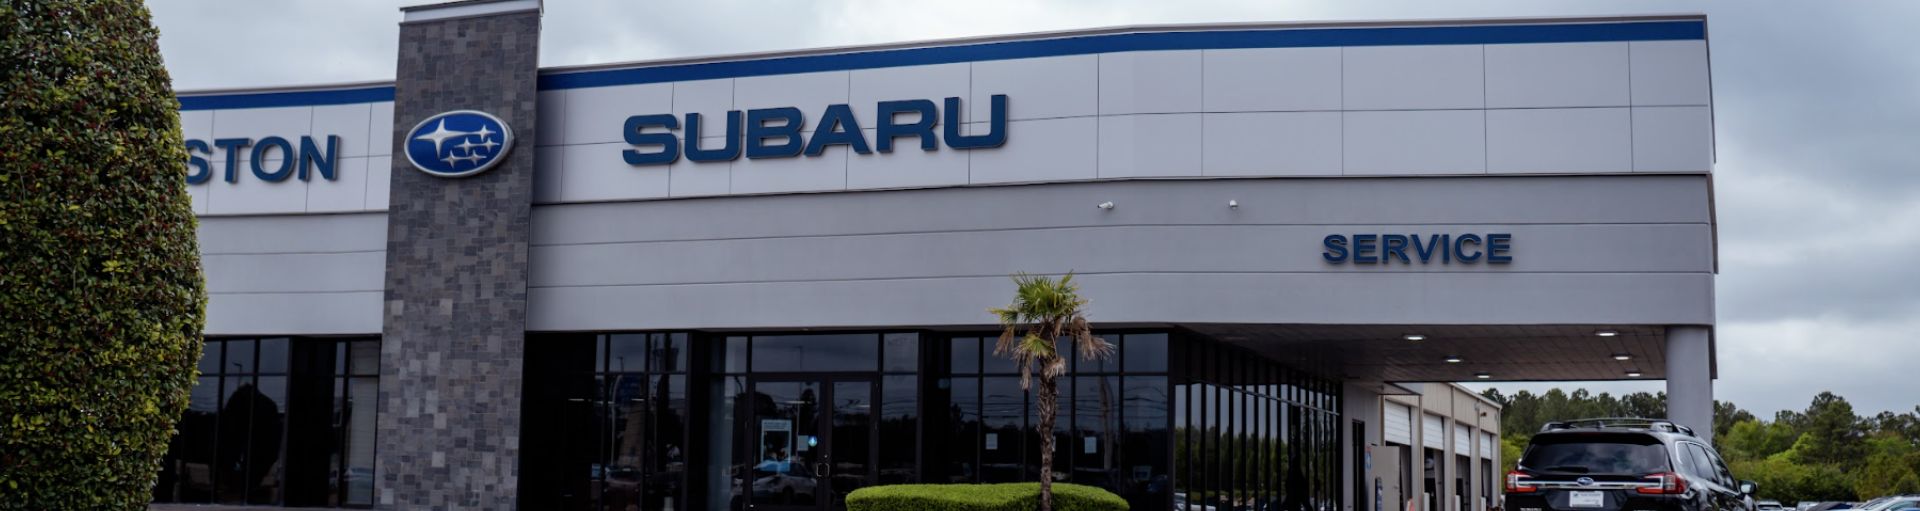 Subaru Service & Repairs near Katy, TX